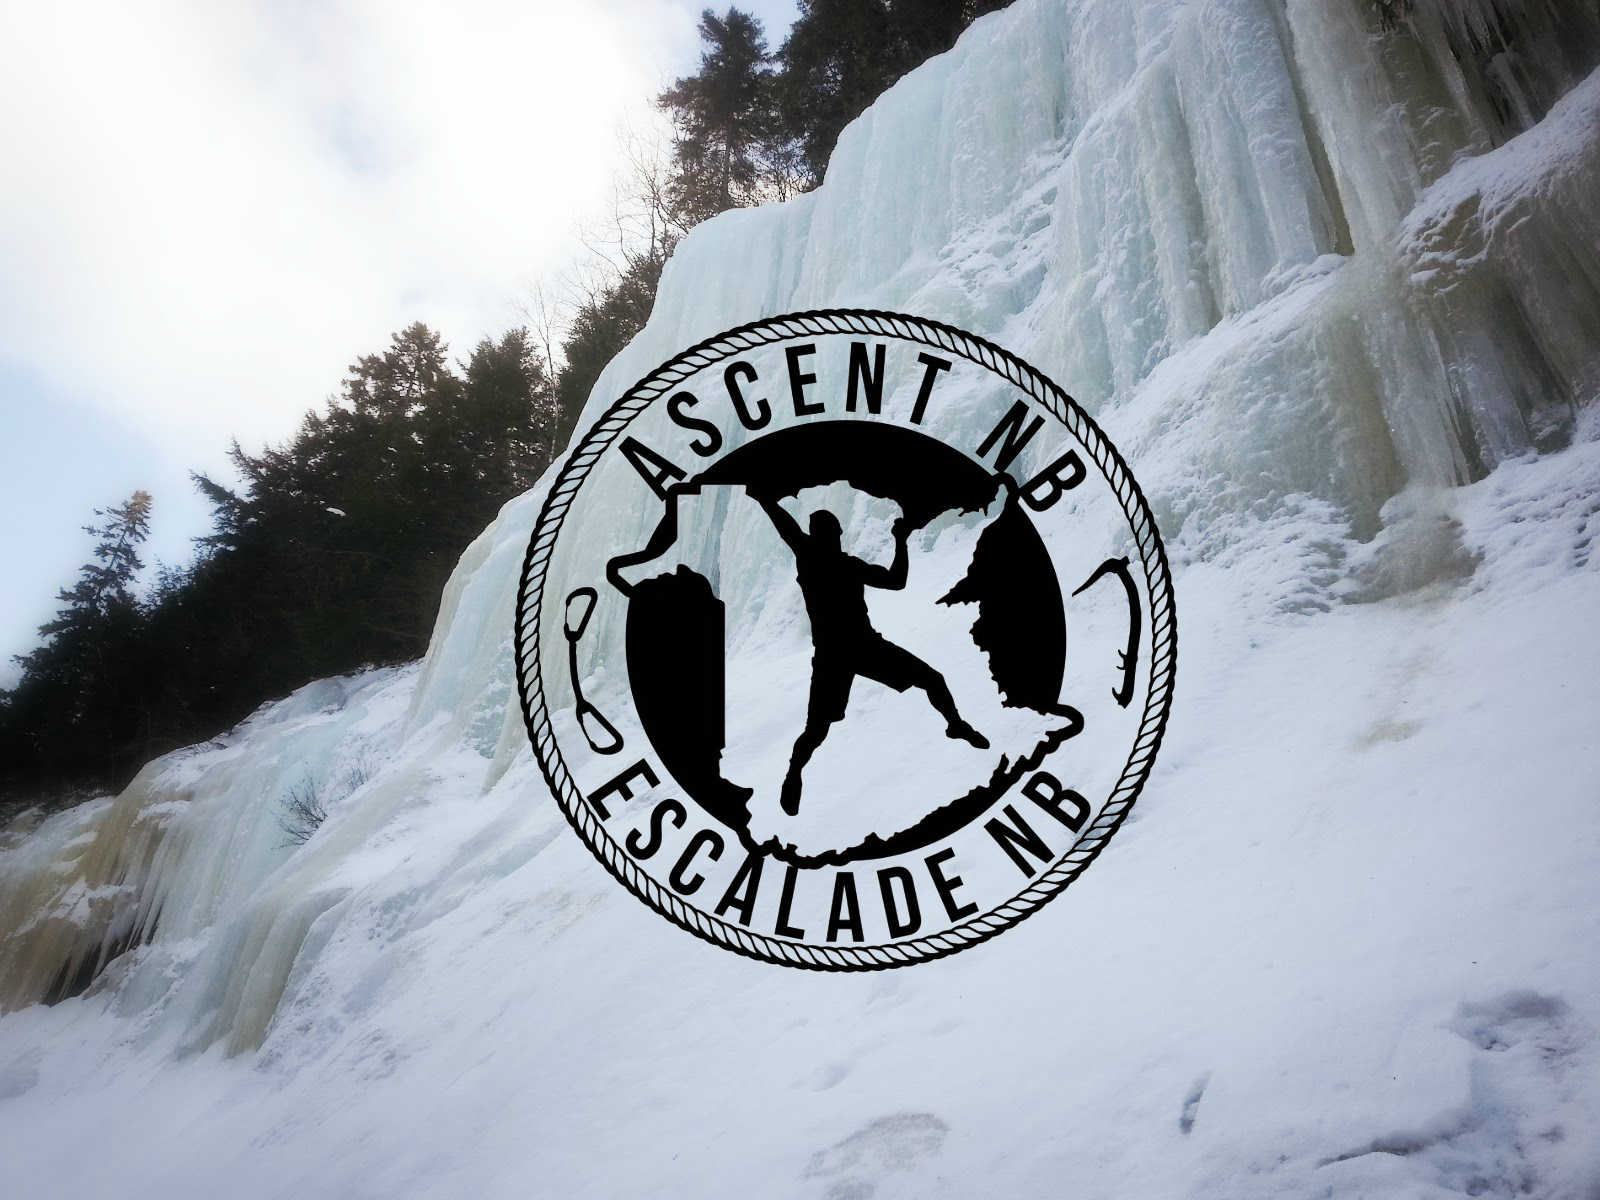 Ice Climbing School – Feb 4th